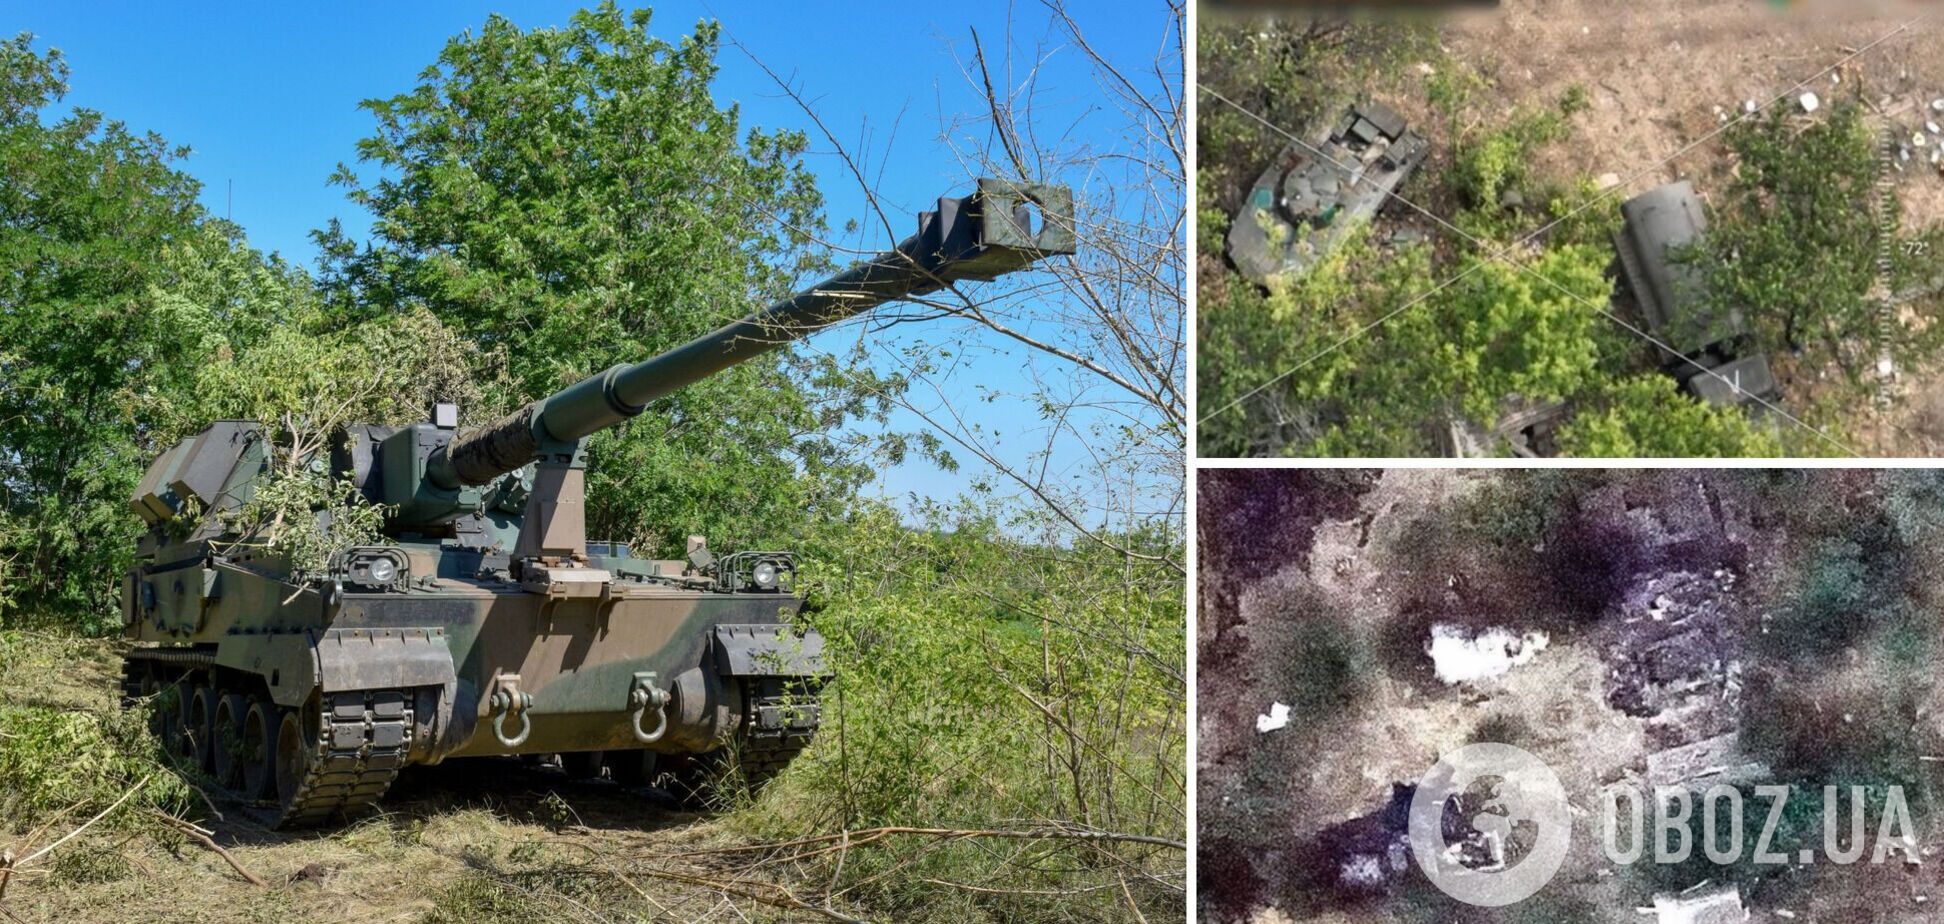 'Демілітаризація' триває: українські морпіхи знищили бензовози, БМП і боєкомплект окупантів. Відео